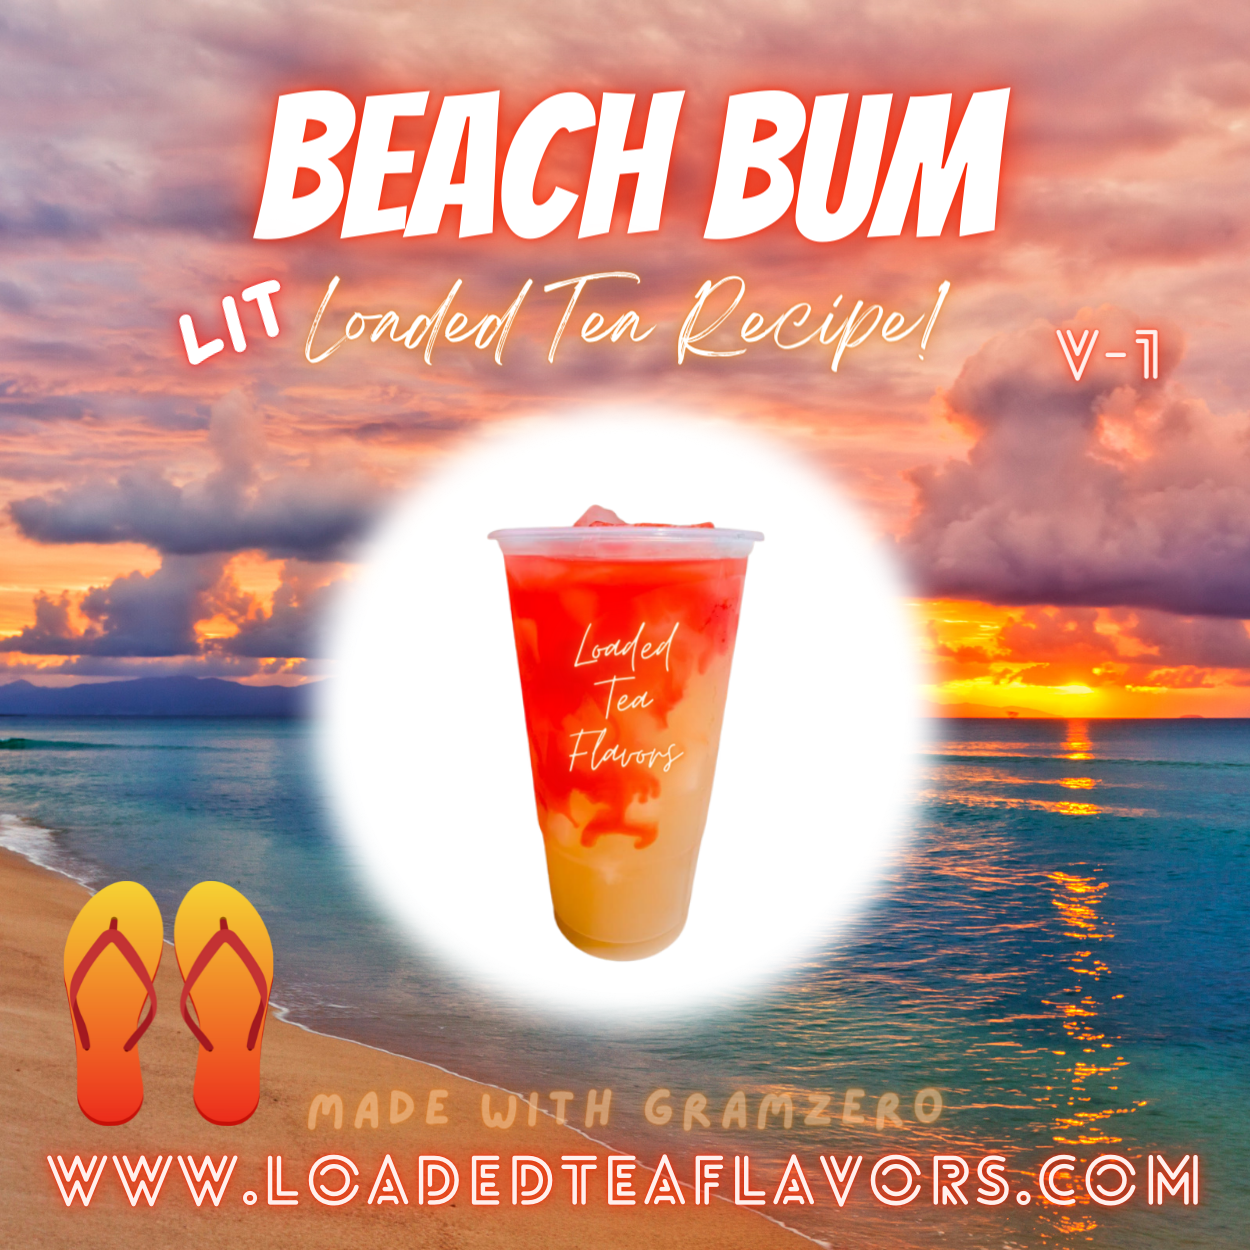 Beach Bum Flavored 🏄‍♂️  Loaded Tea Recipe